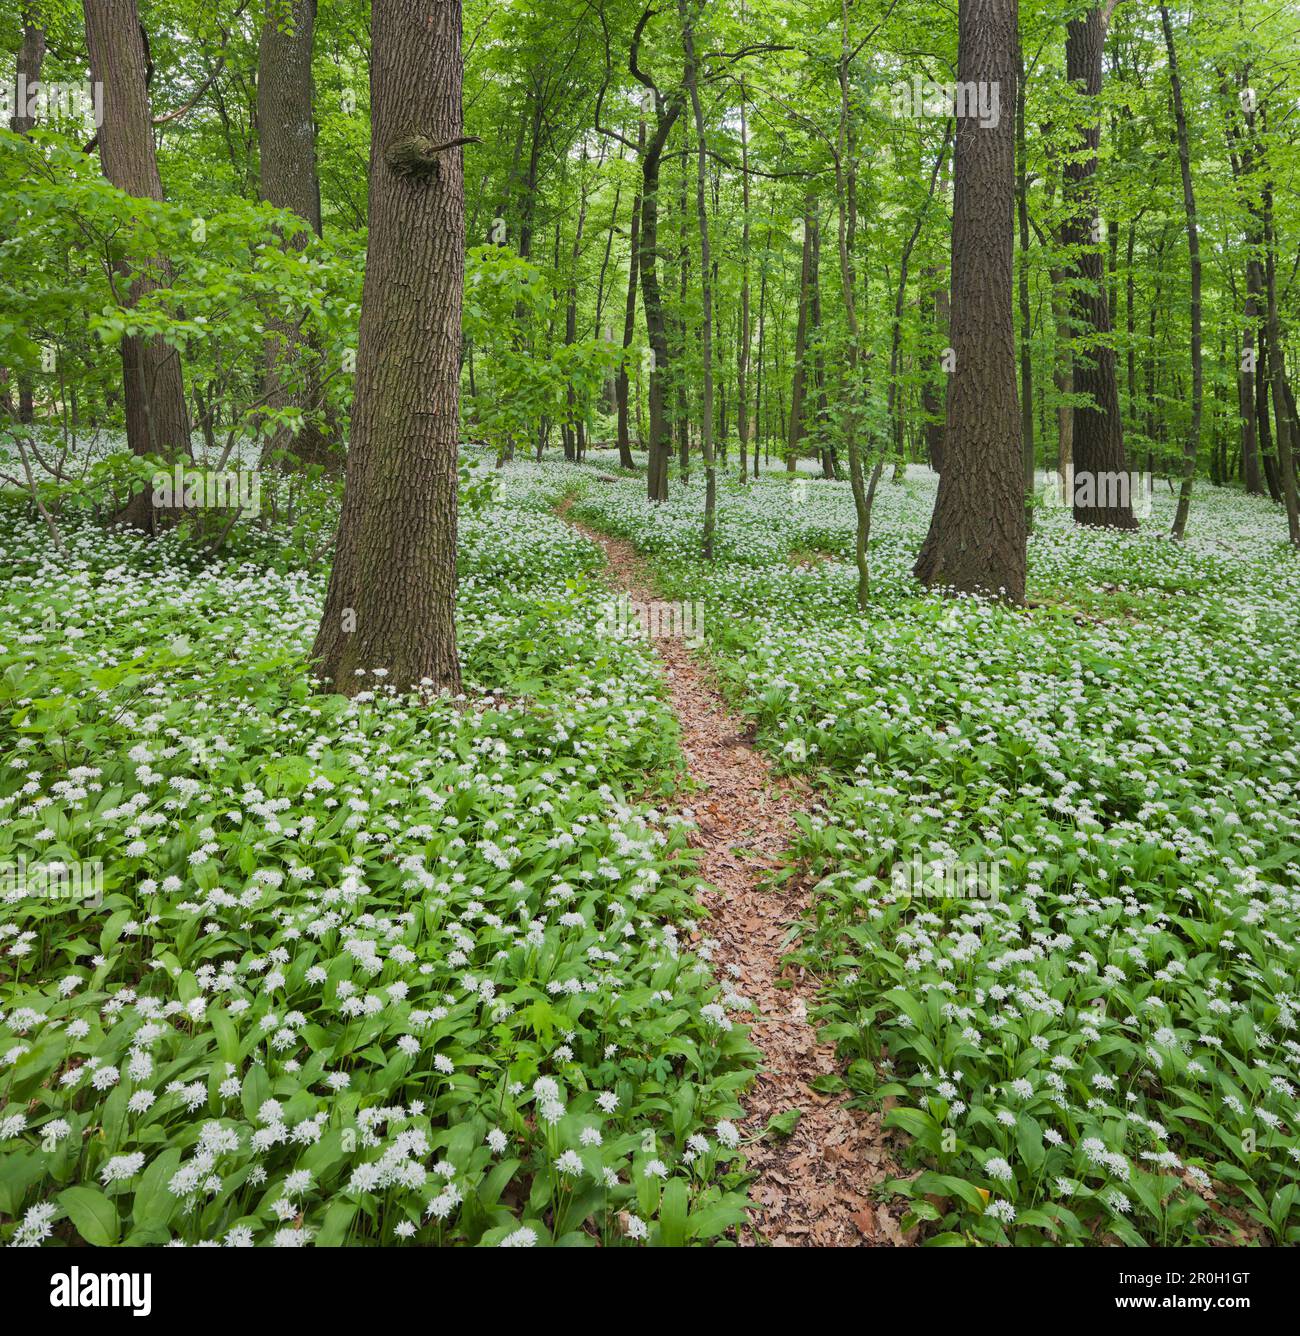 Sentier de randonnée et ail sauvage en fleurs dans les bois de Vienne, 18th district, Vienne, Autriche, Europe Banque D'Images